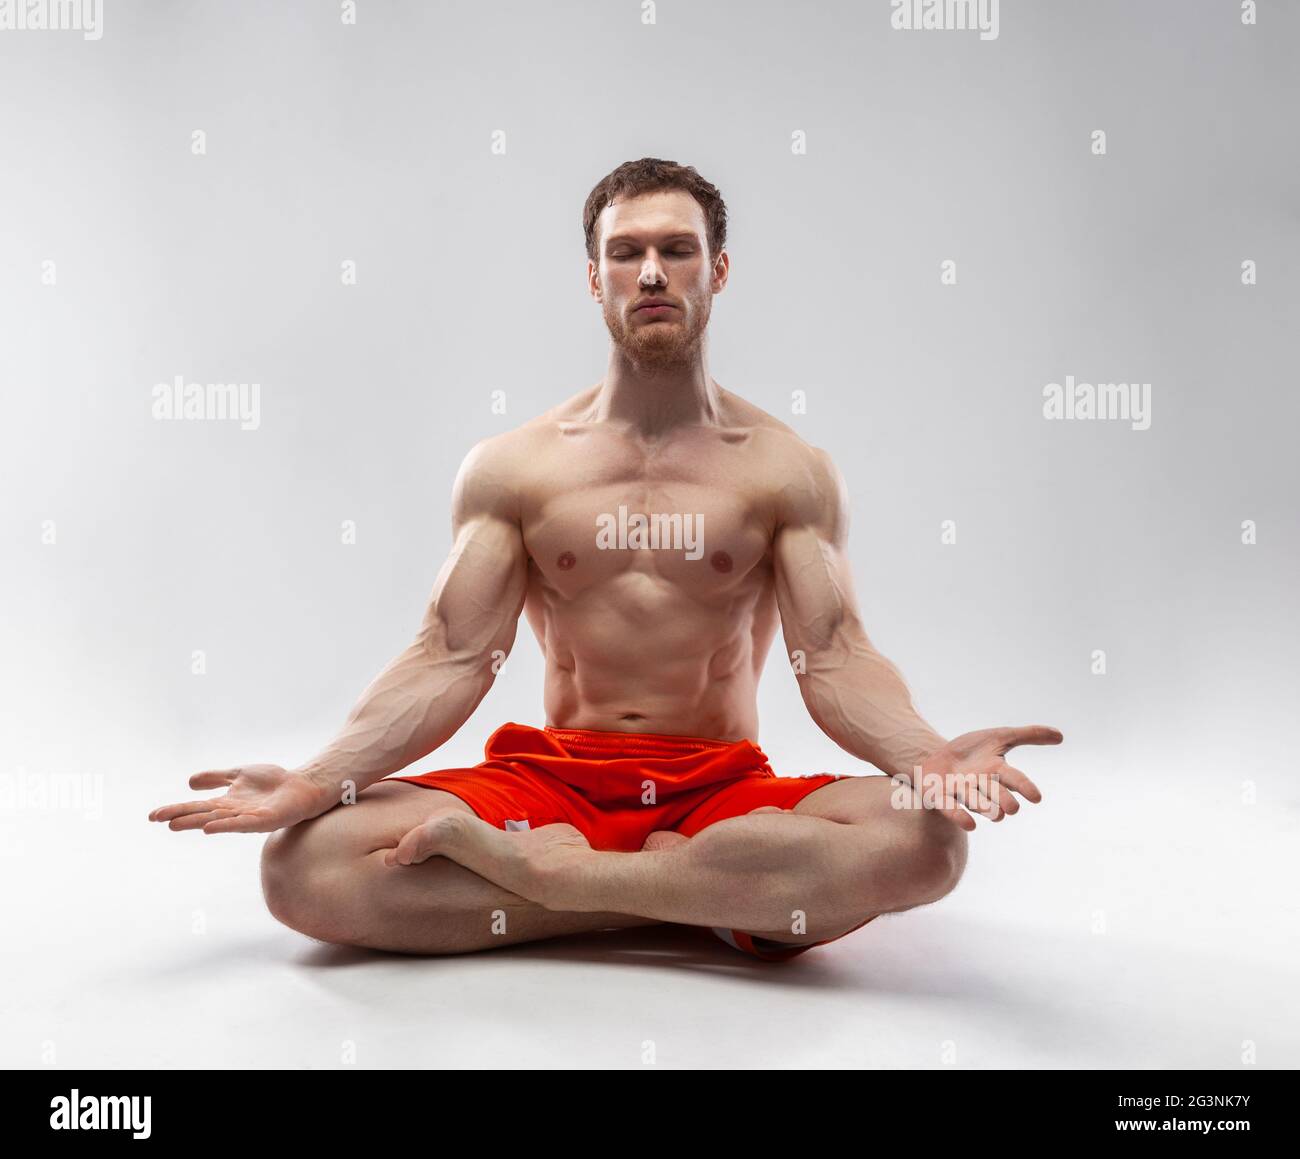 Un hombre con sus ojos cerrados y el cuerpo musculoso sentado en la postura del loto Foto de stock